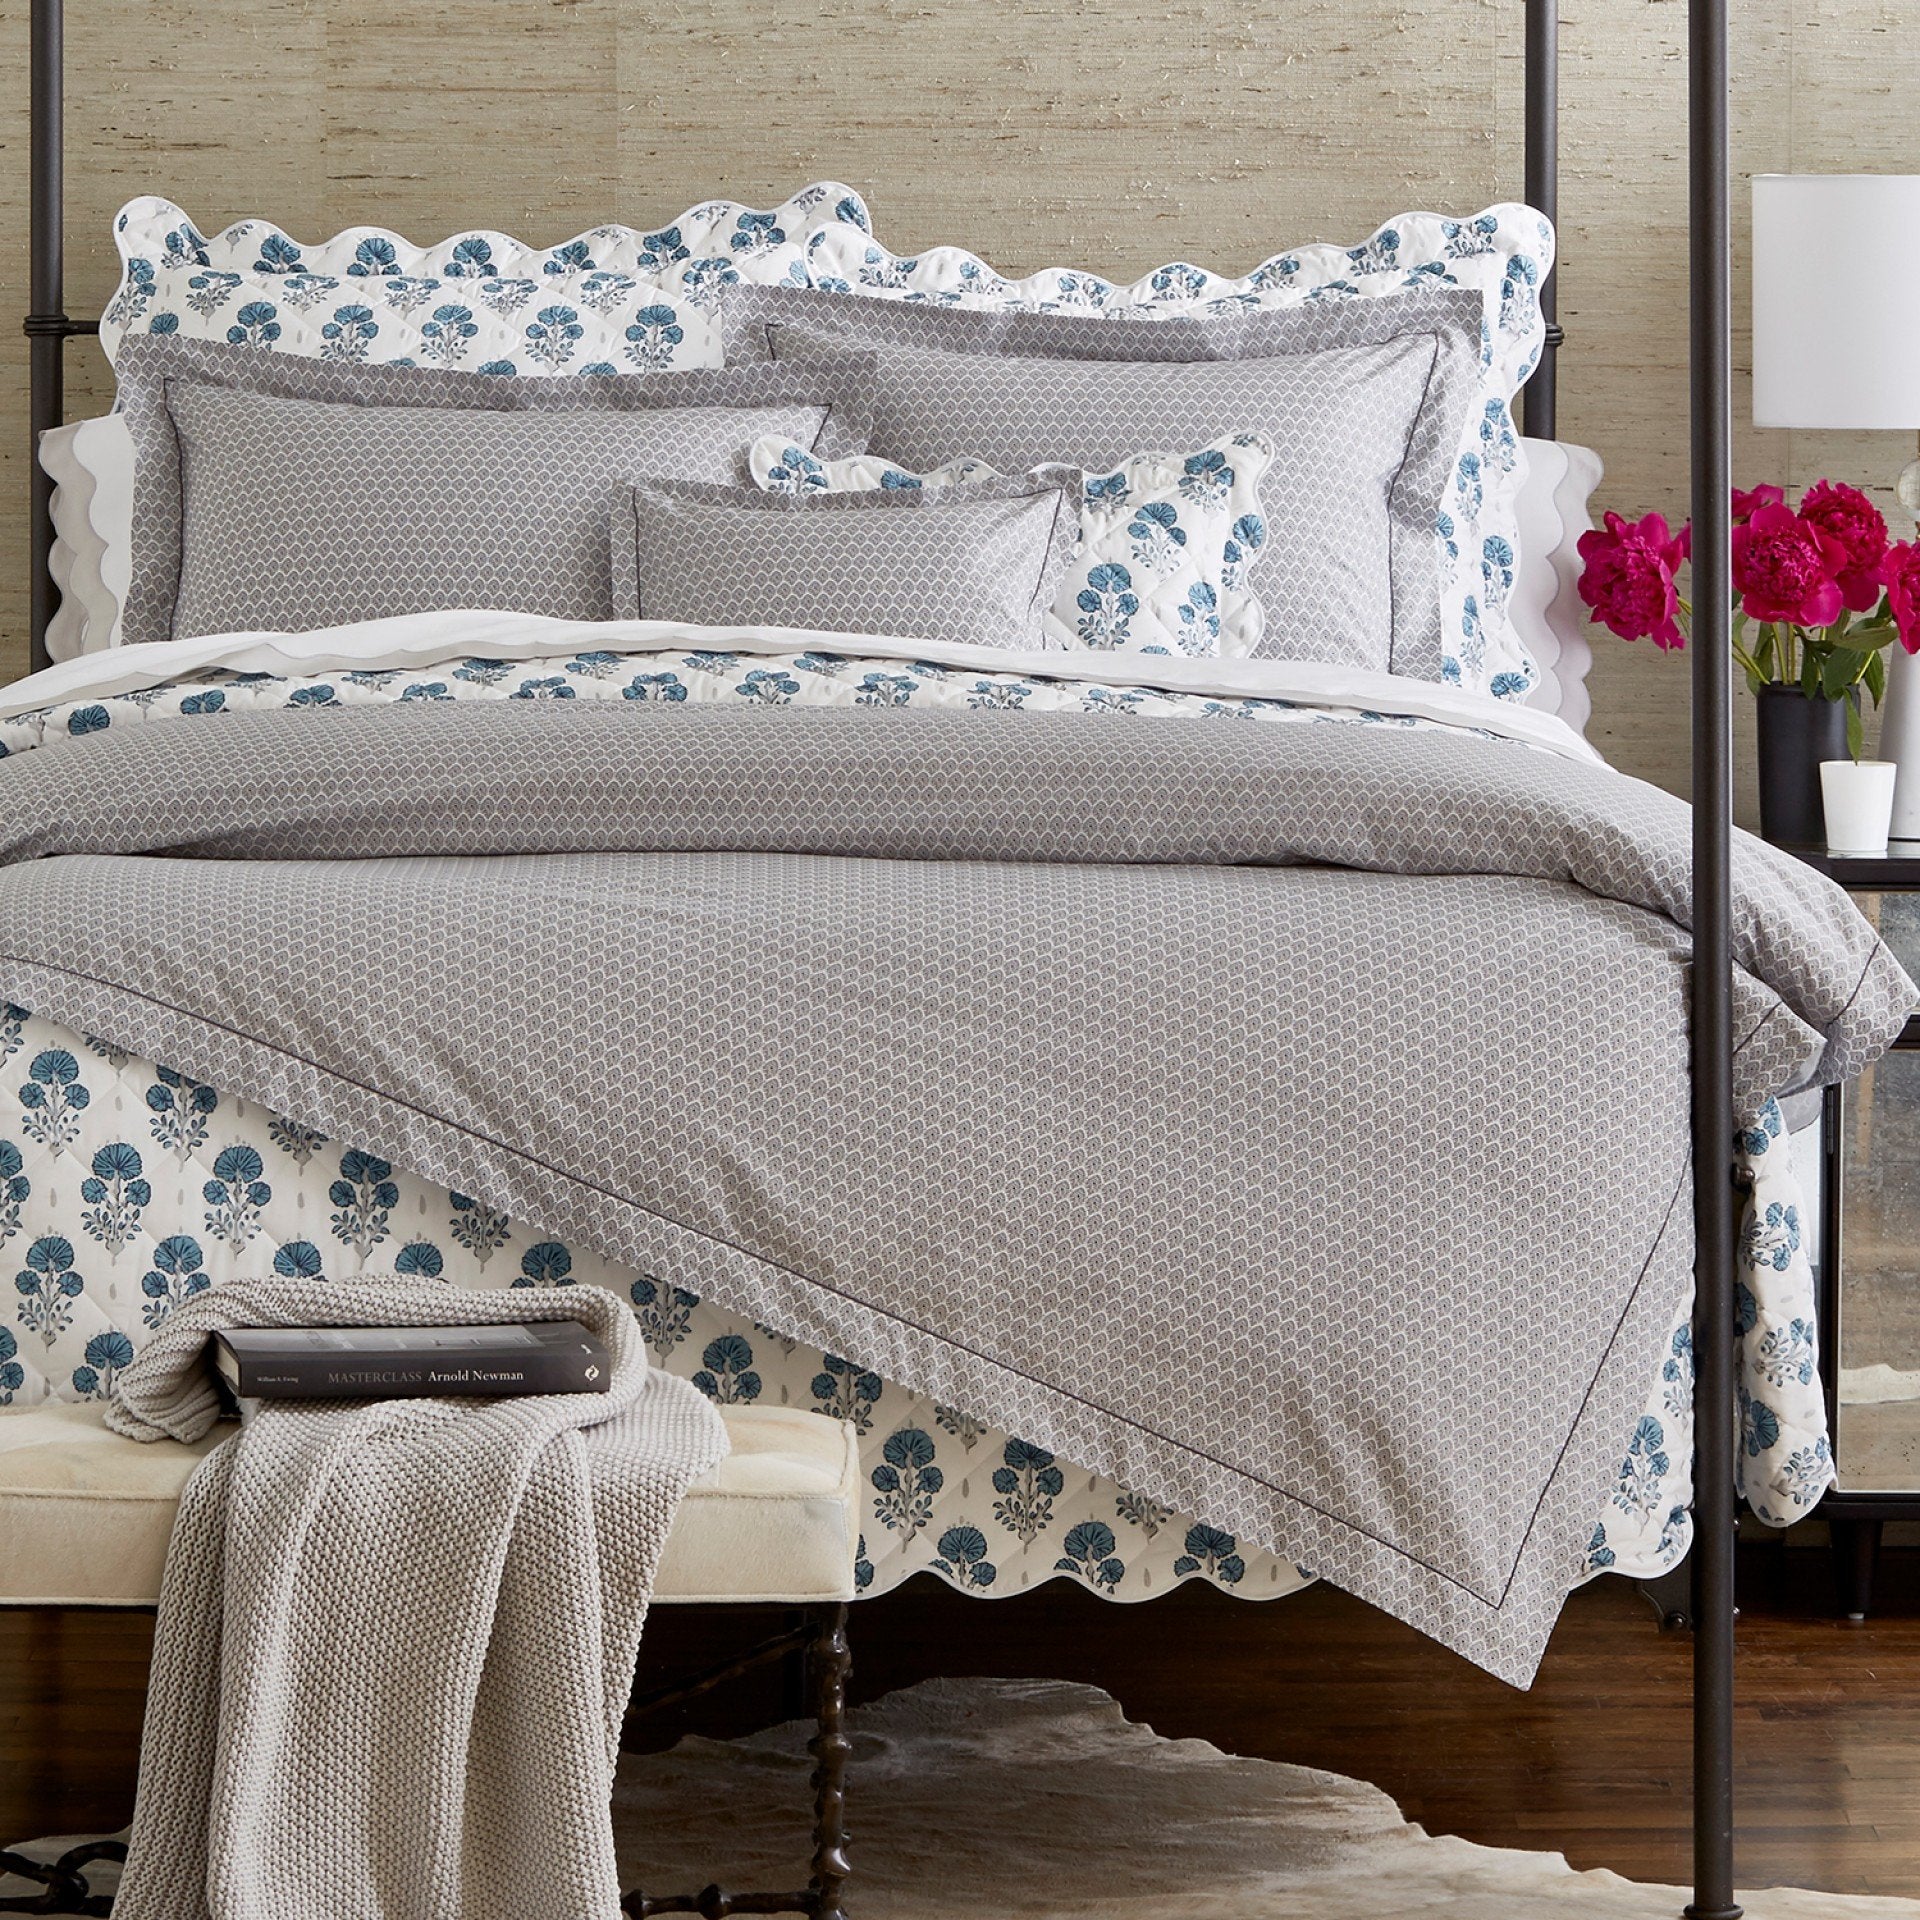 Joplin Bedding by Lulu DK Matouk - Duvets, Quilts, Shams, Sheets -  Mineral blue